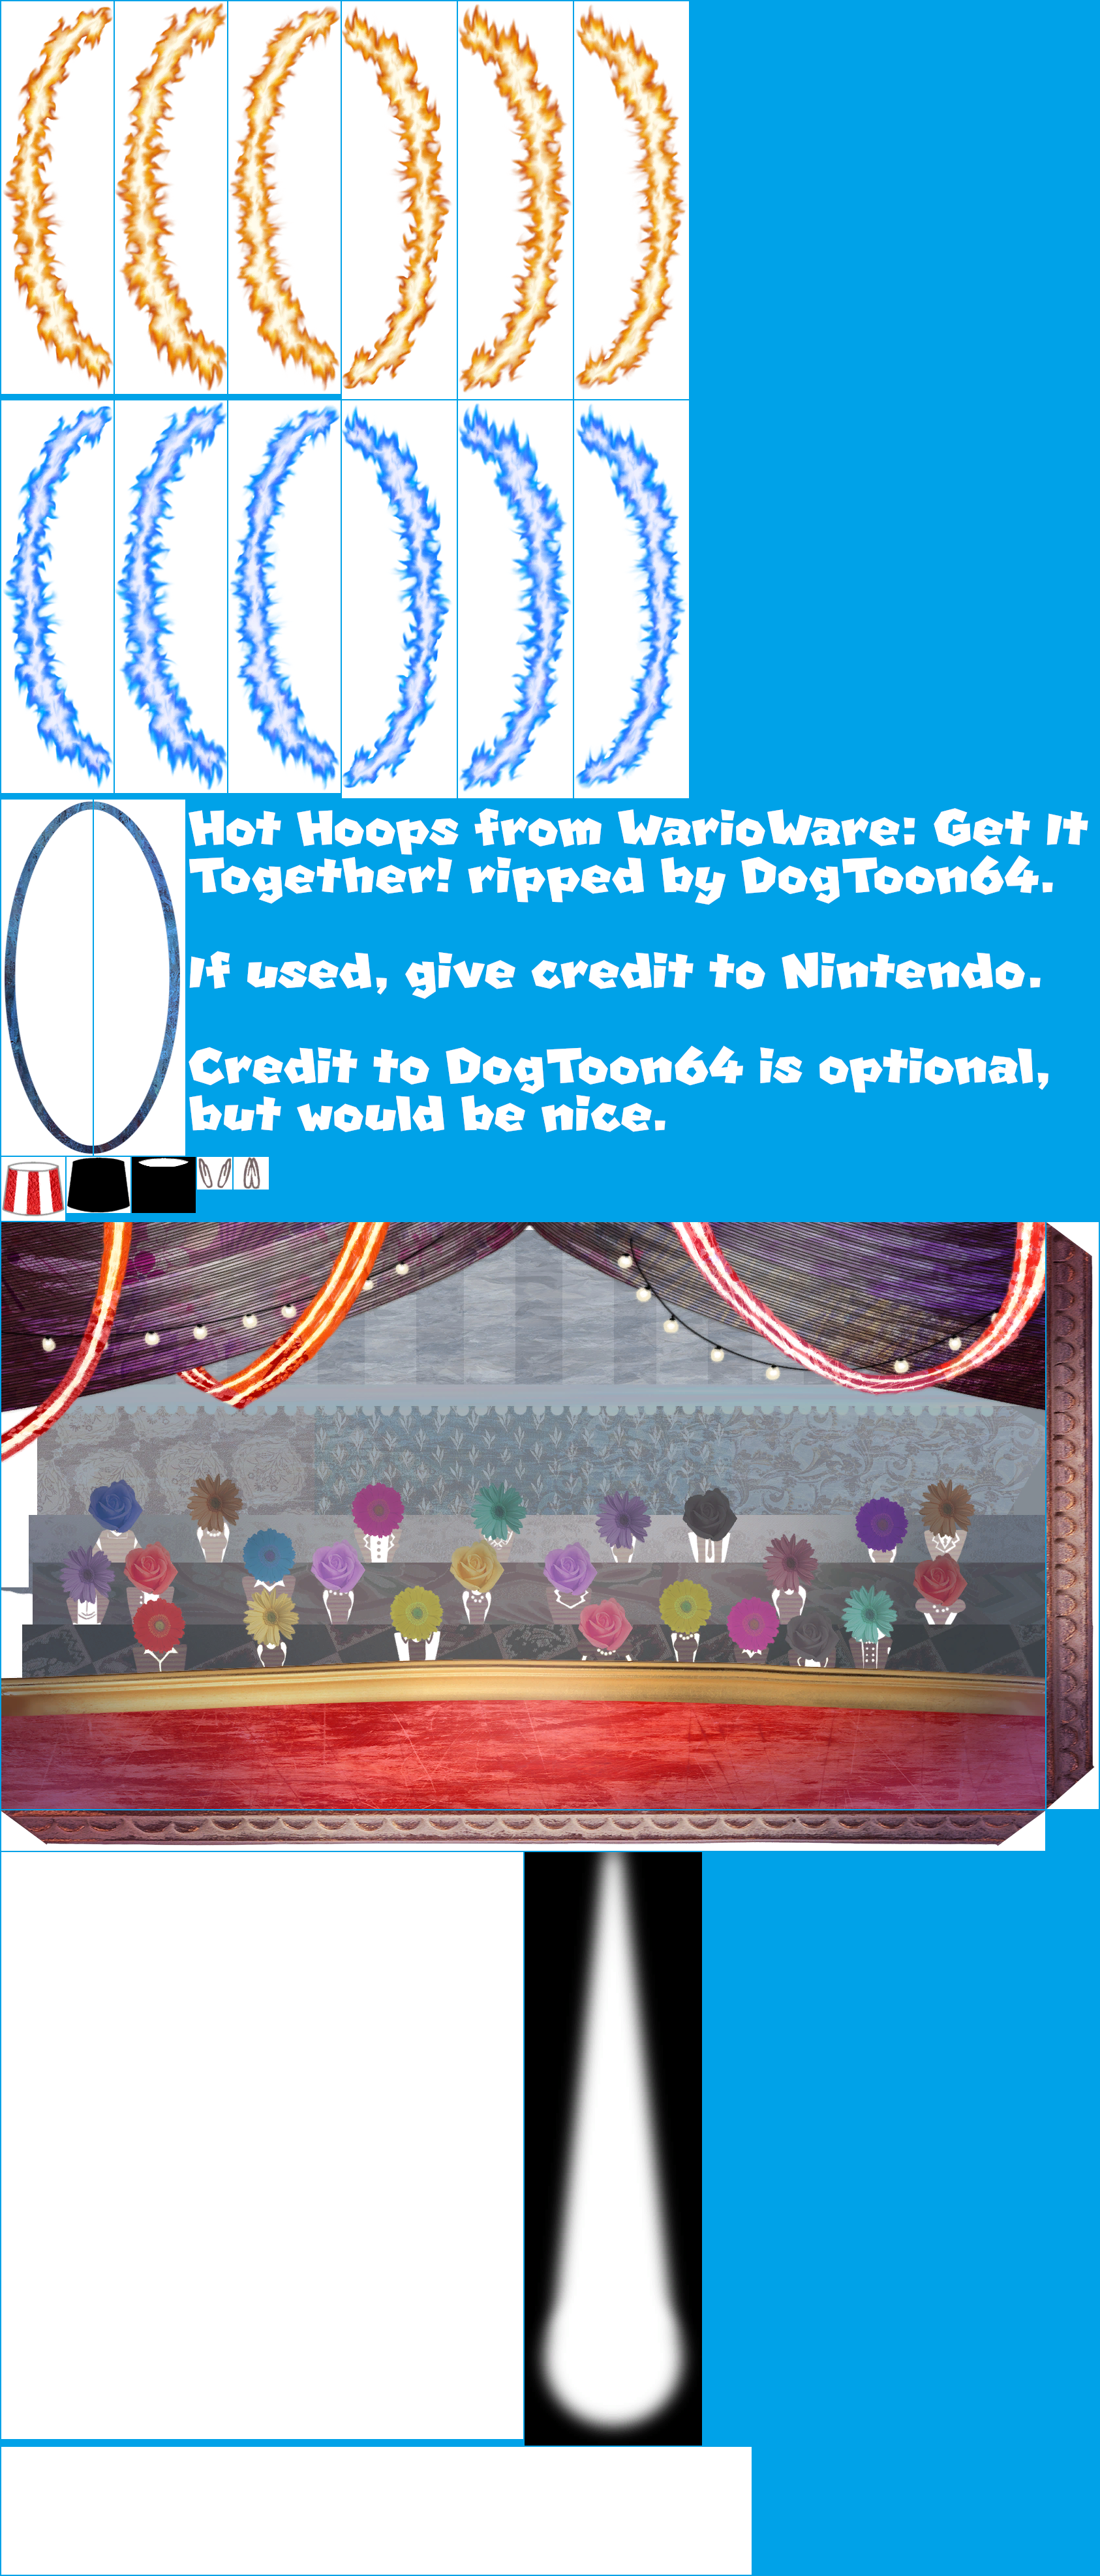 WarioWare: Get It Together! - Hot Hoops